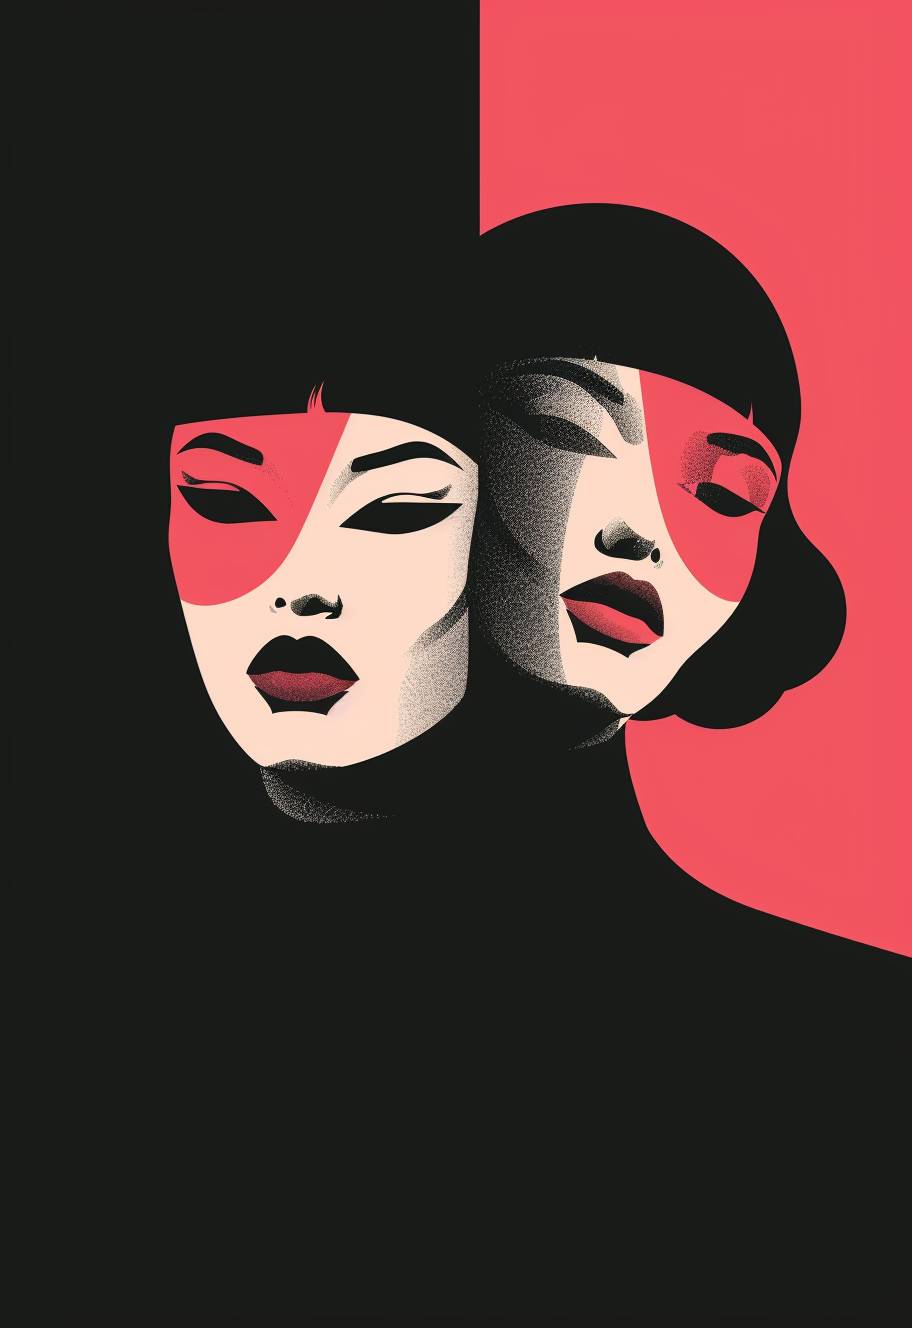 非現実的なスタイルで、顔にマスクをつけた2人の女性を描いたミニマリストのレトロイラスト、ピンクと赤のカラーパレット、濃い対比の黒い背景、シンプルな形状を特徴としたミニマリズム